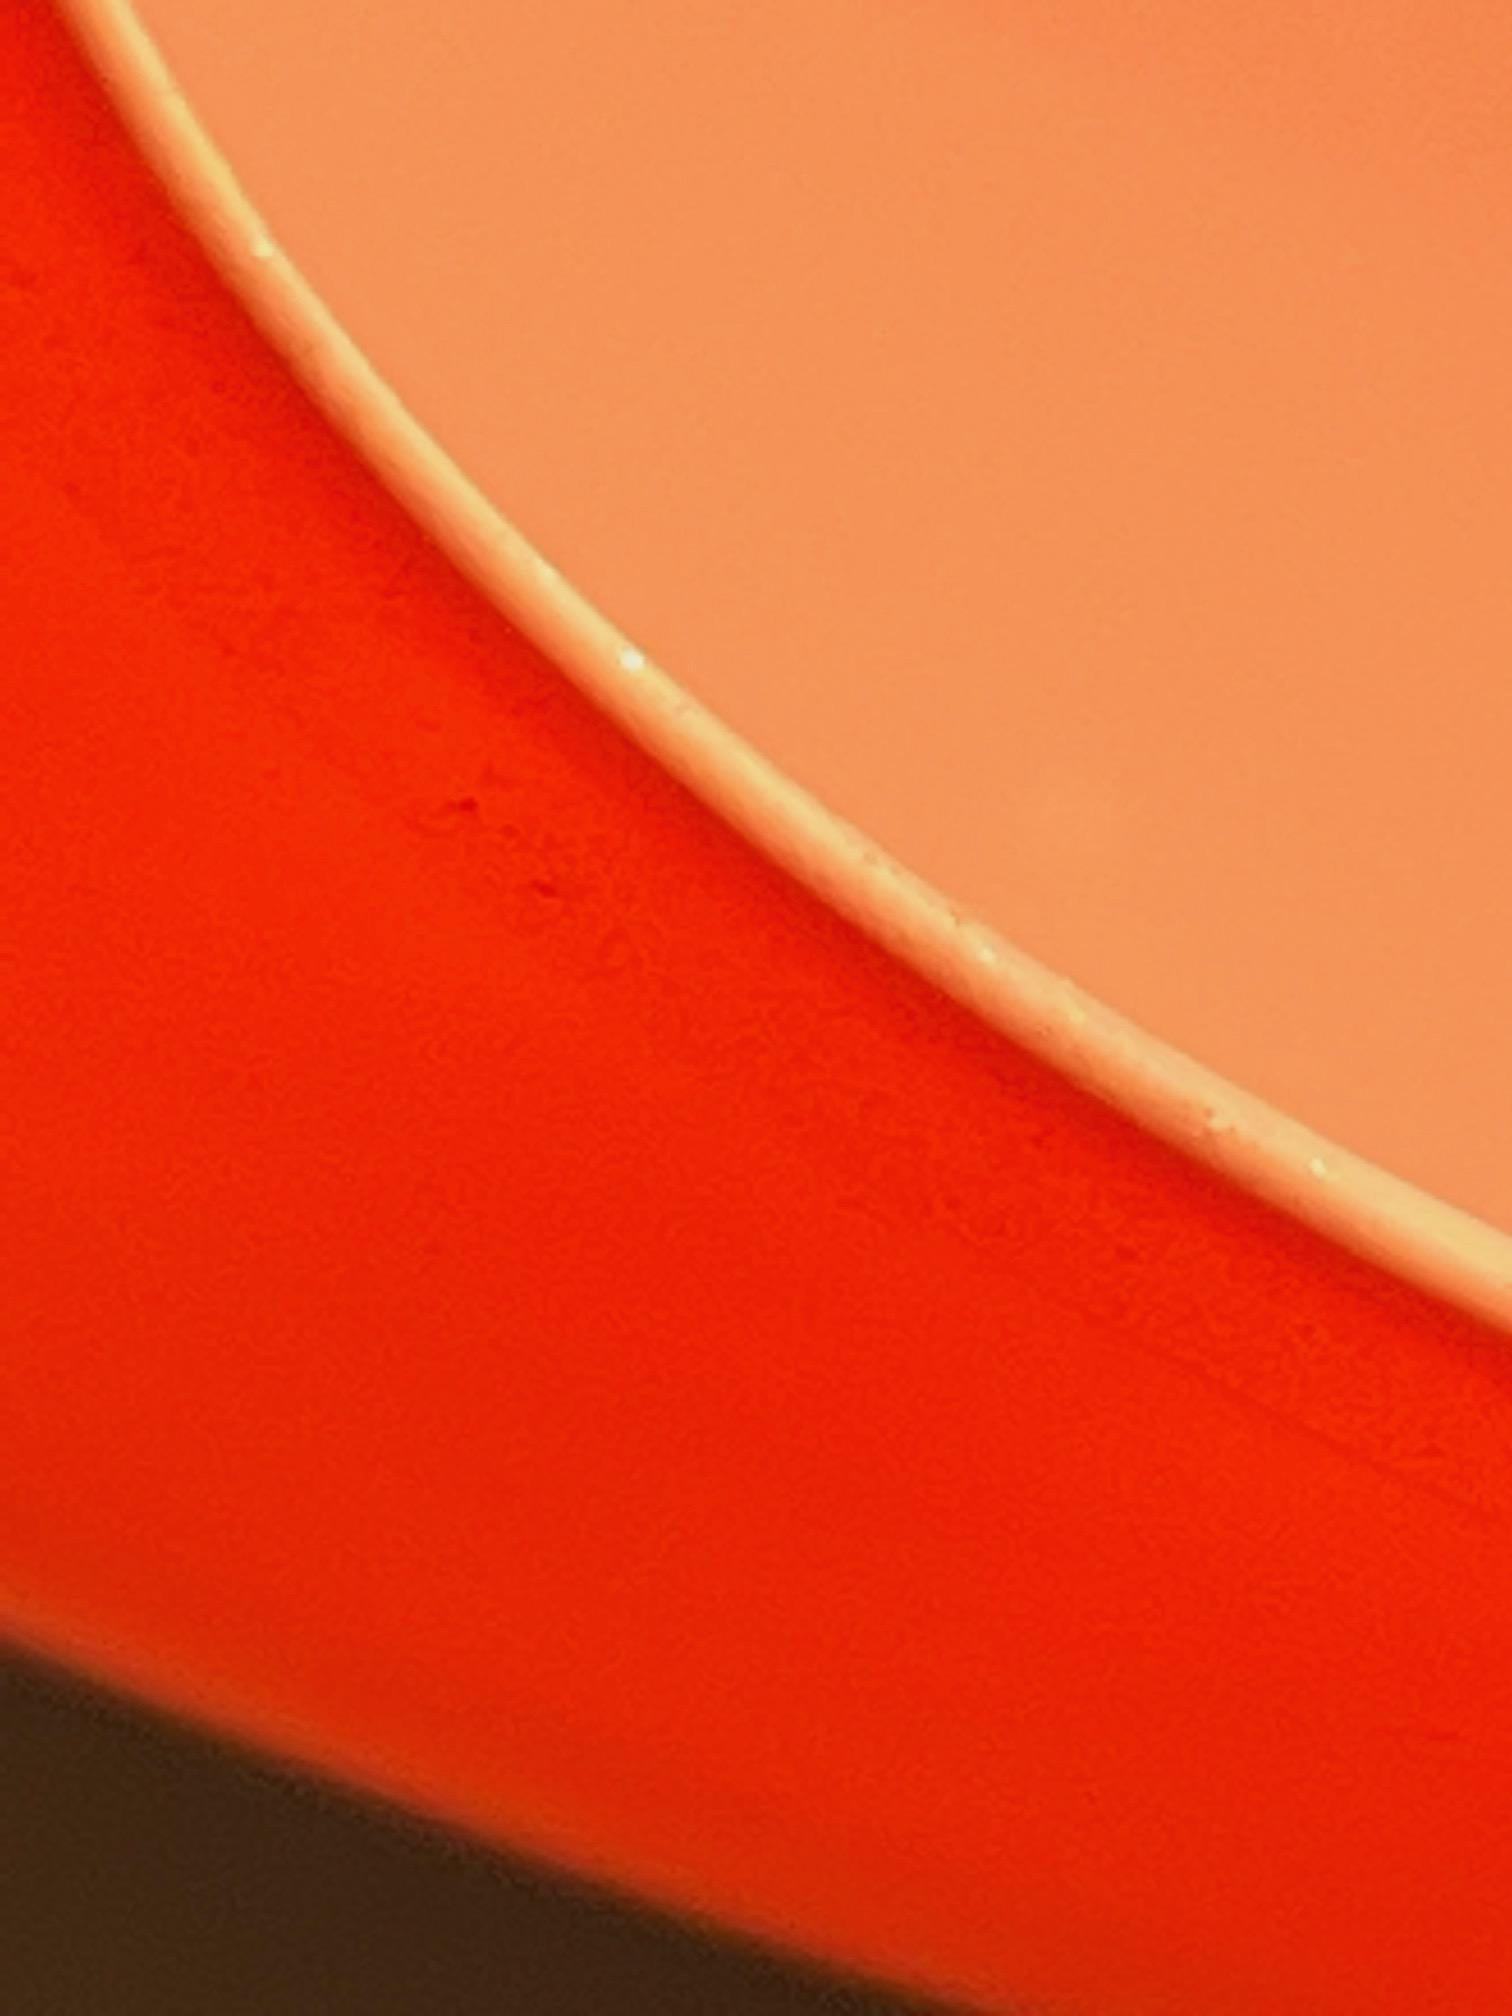 Mid-20th Century Venini Murano Orange Cased Glass Pendant 1950's For Sale